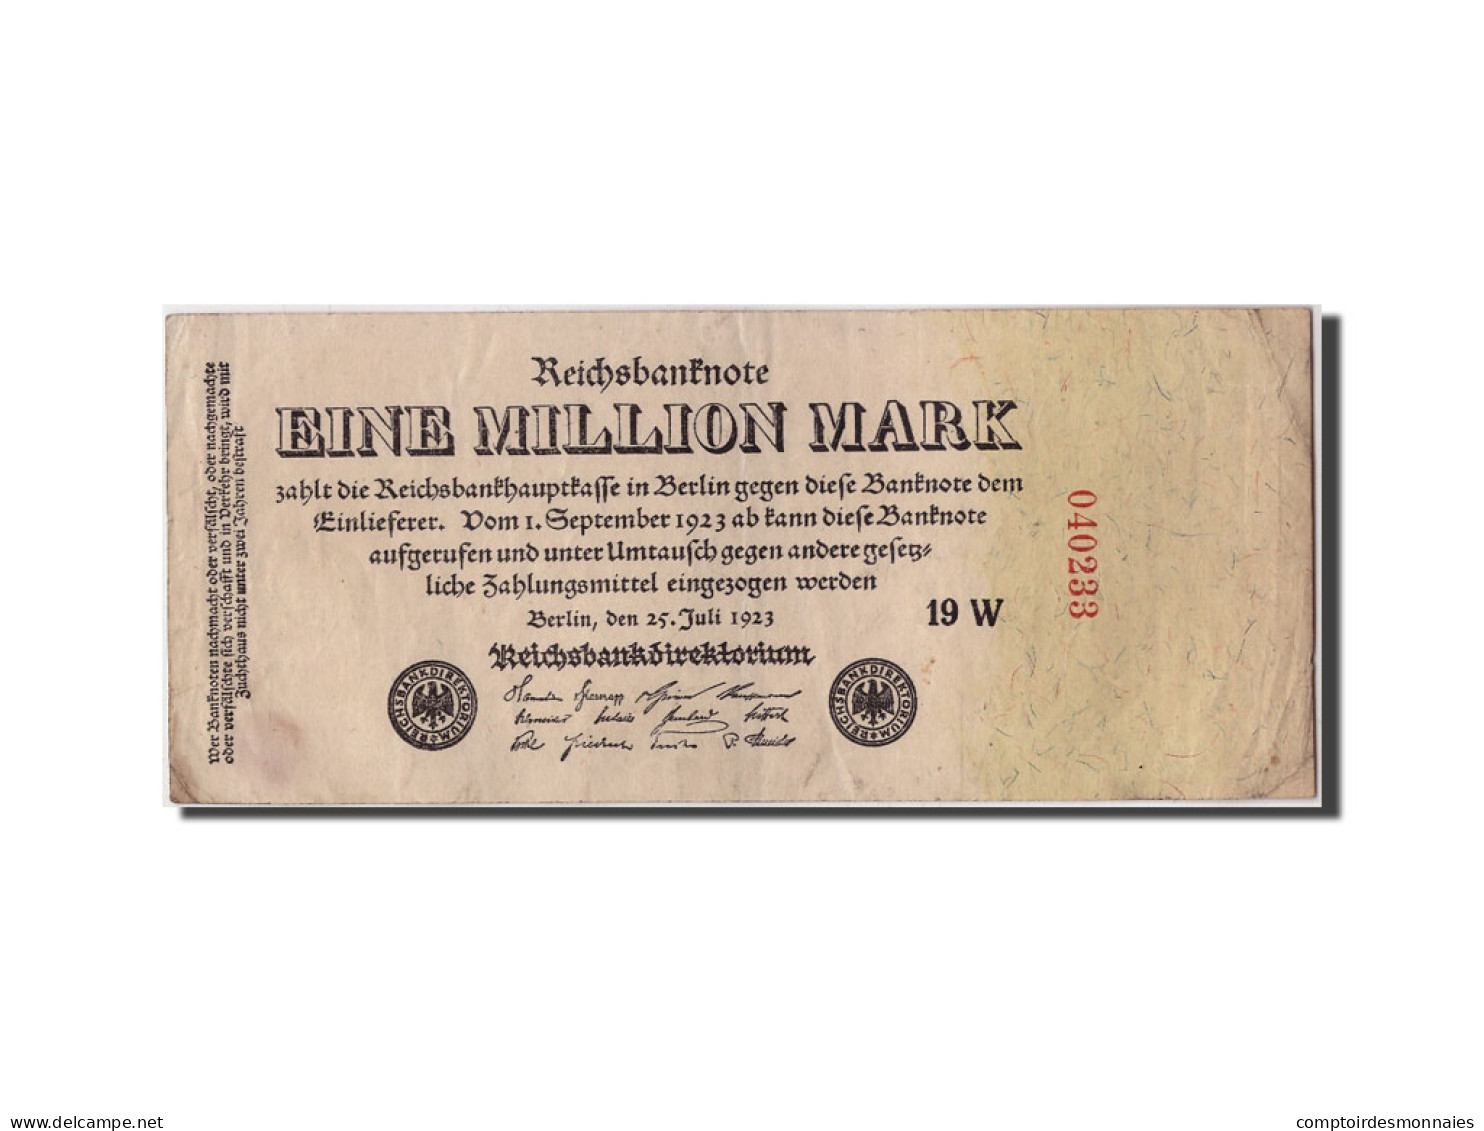 Billet, Allemagne, 1 Million Mark, 1923, 1923-07-25, KM:94, TTB - 1 Mio. Mark